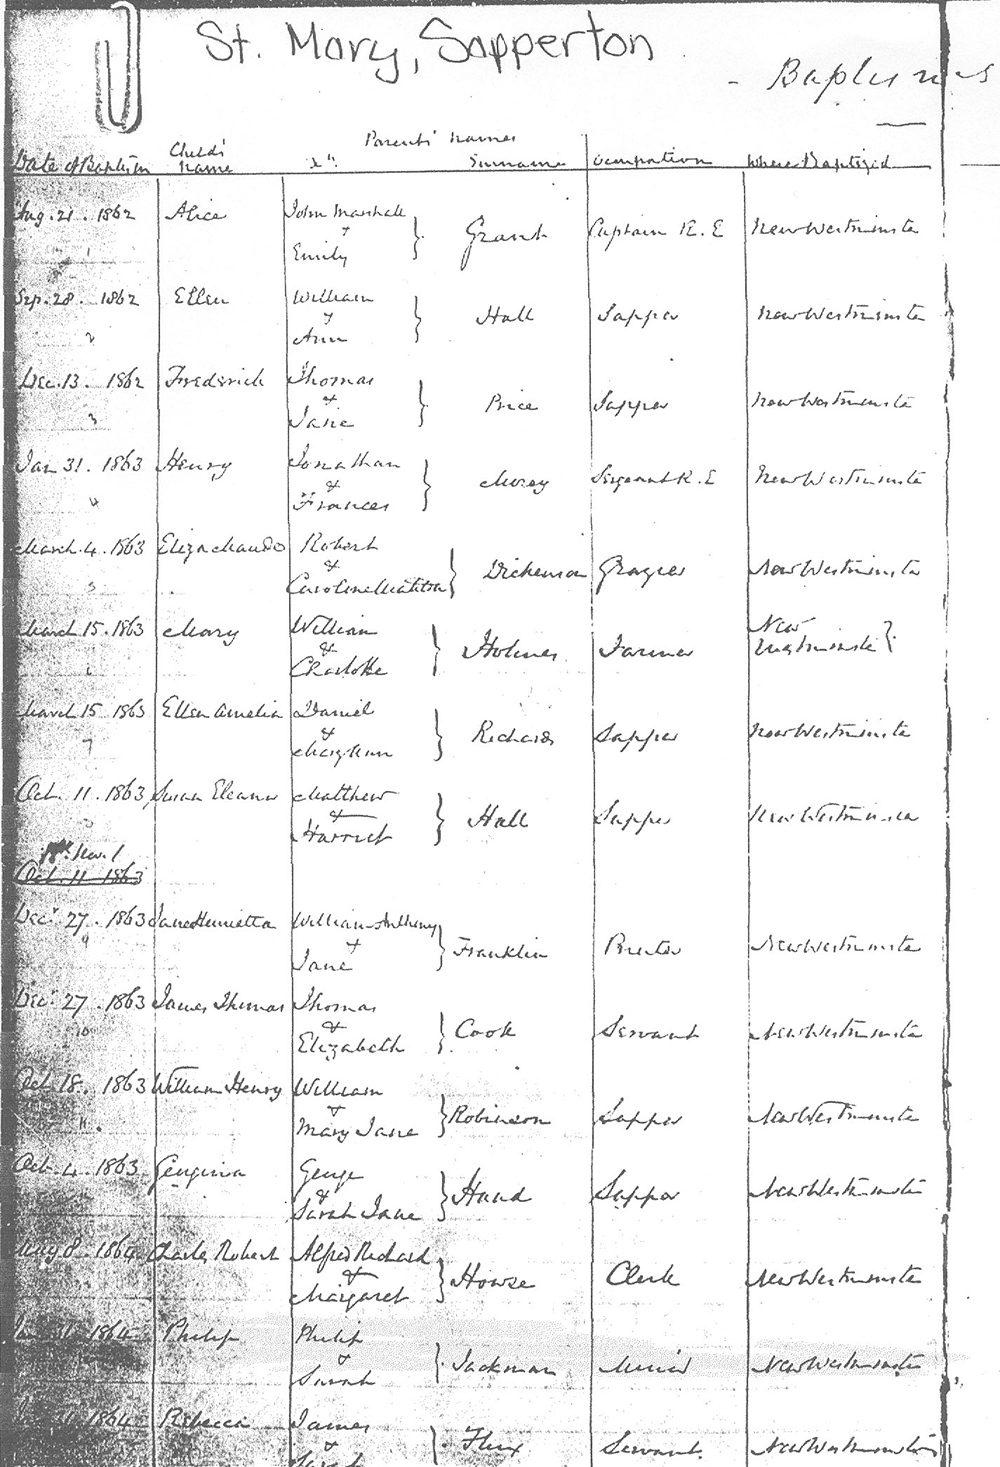 Un facsimilé d’une page de registre des baptêmes (1864) de l’église St. Mary de Sapperton. On y lit la date de naissance de Philip Jackman fils, et Philip et Sarah Jackman y sont nommés comme parents.